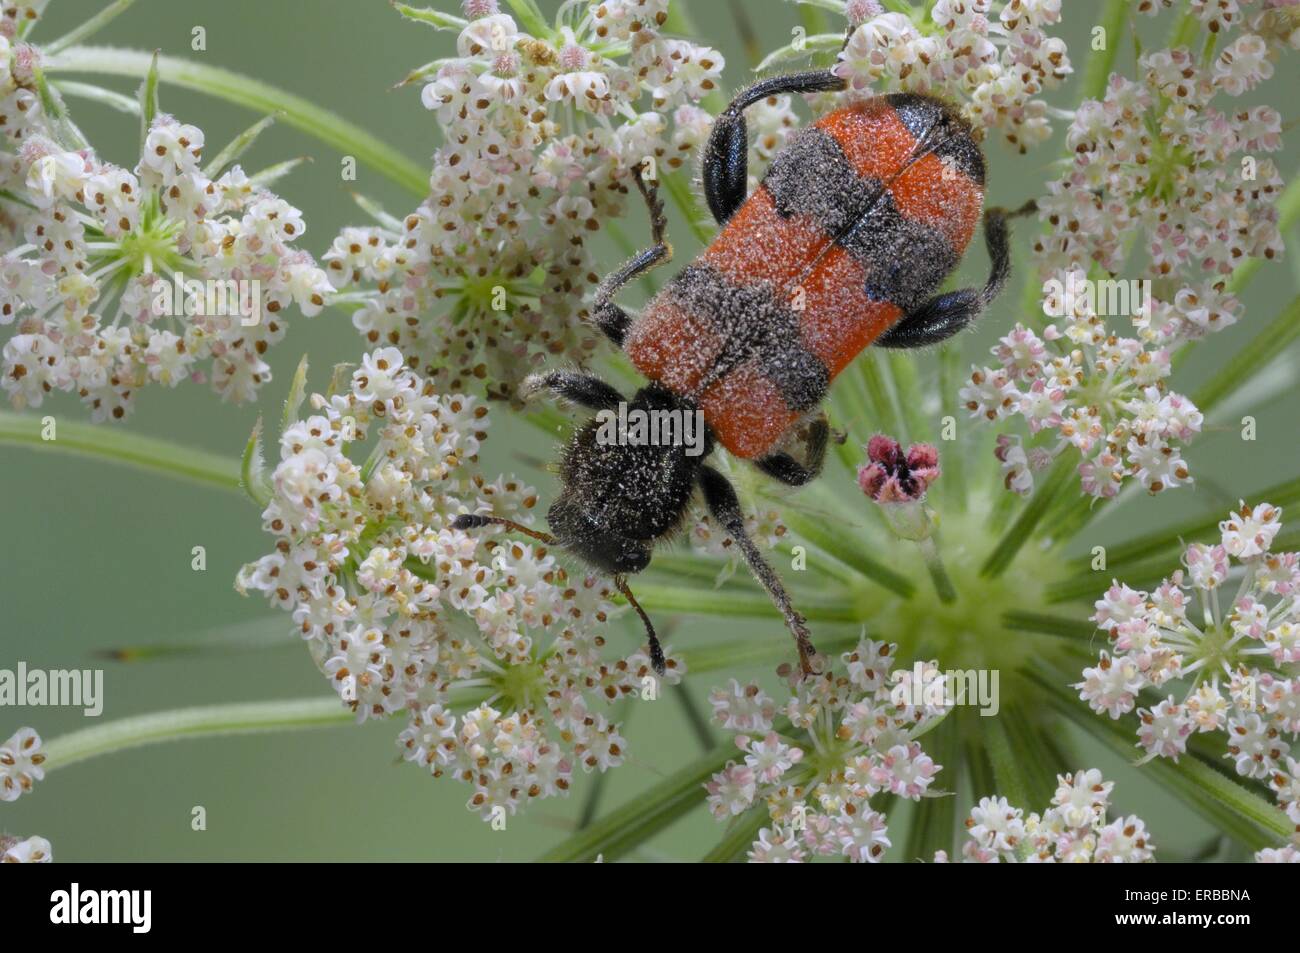 Biene-Käfer - karierte Käfer (Trichodes Apiarius) auf Blume Vaucluse - Provence - Frankreich Stockfoto